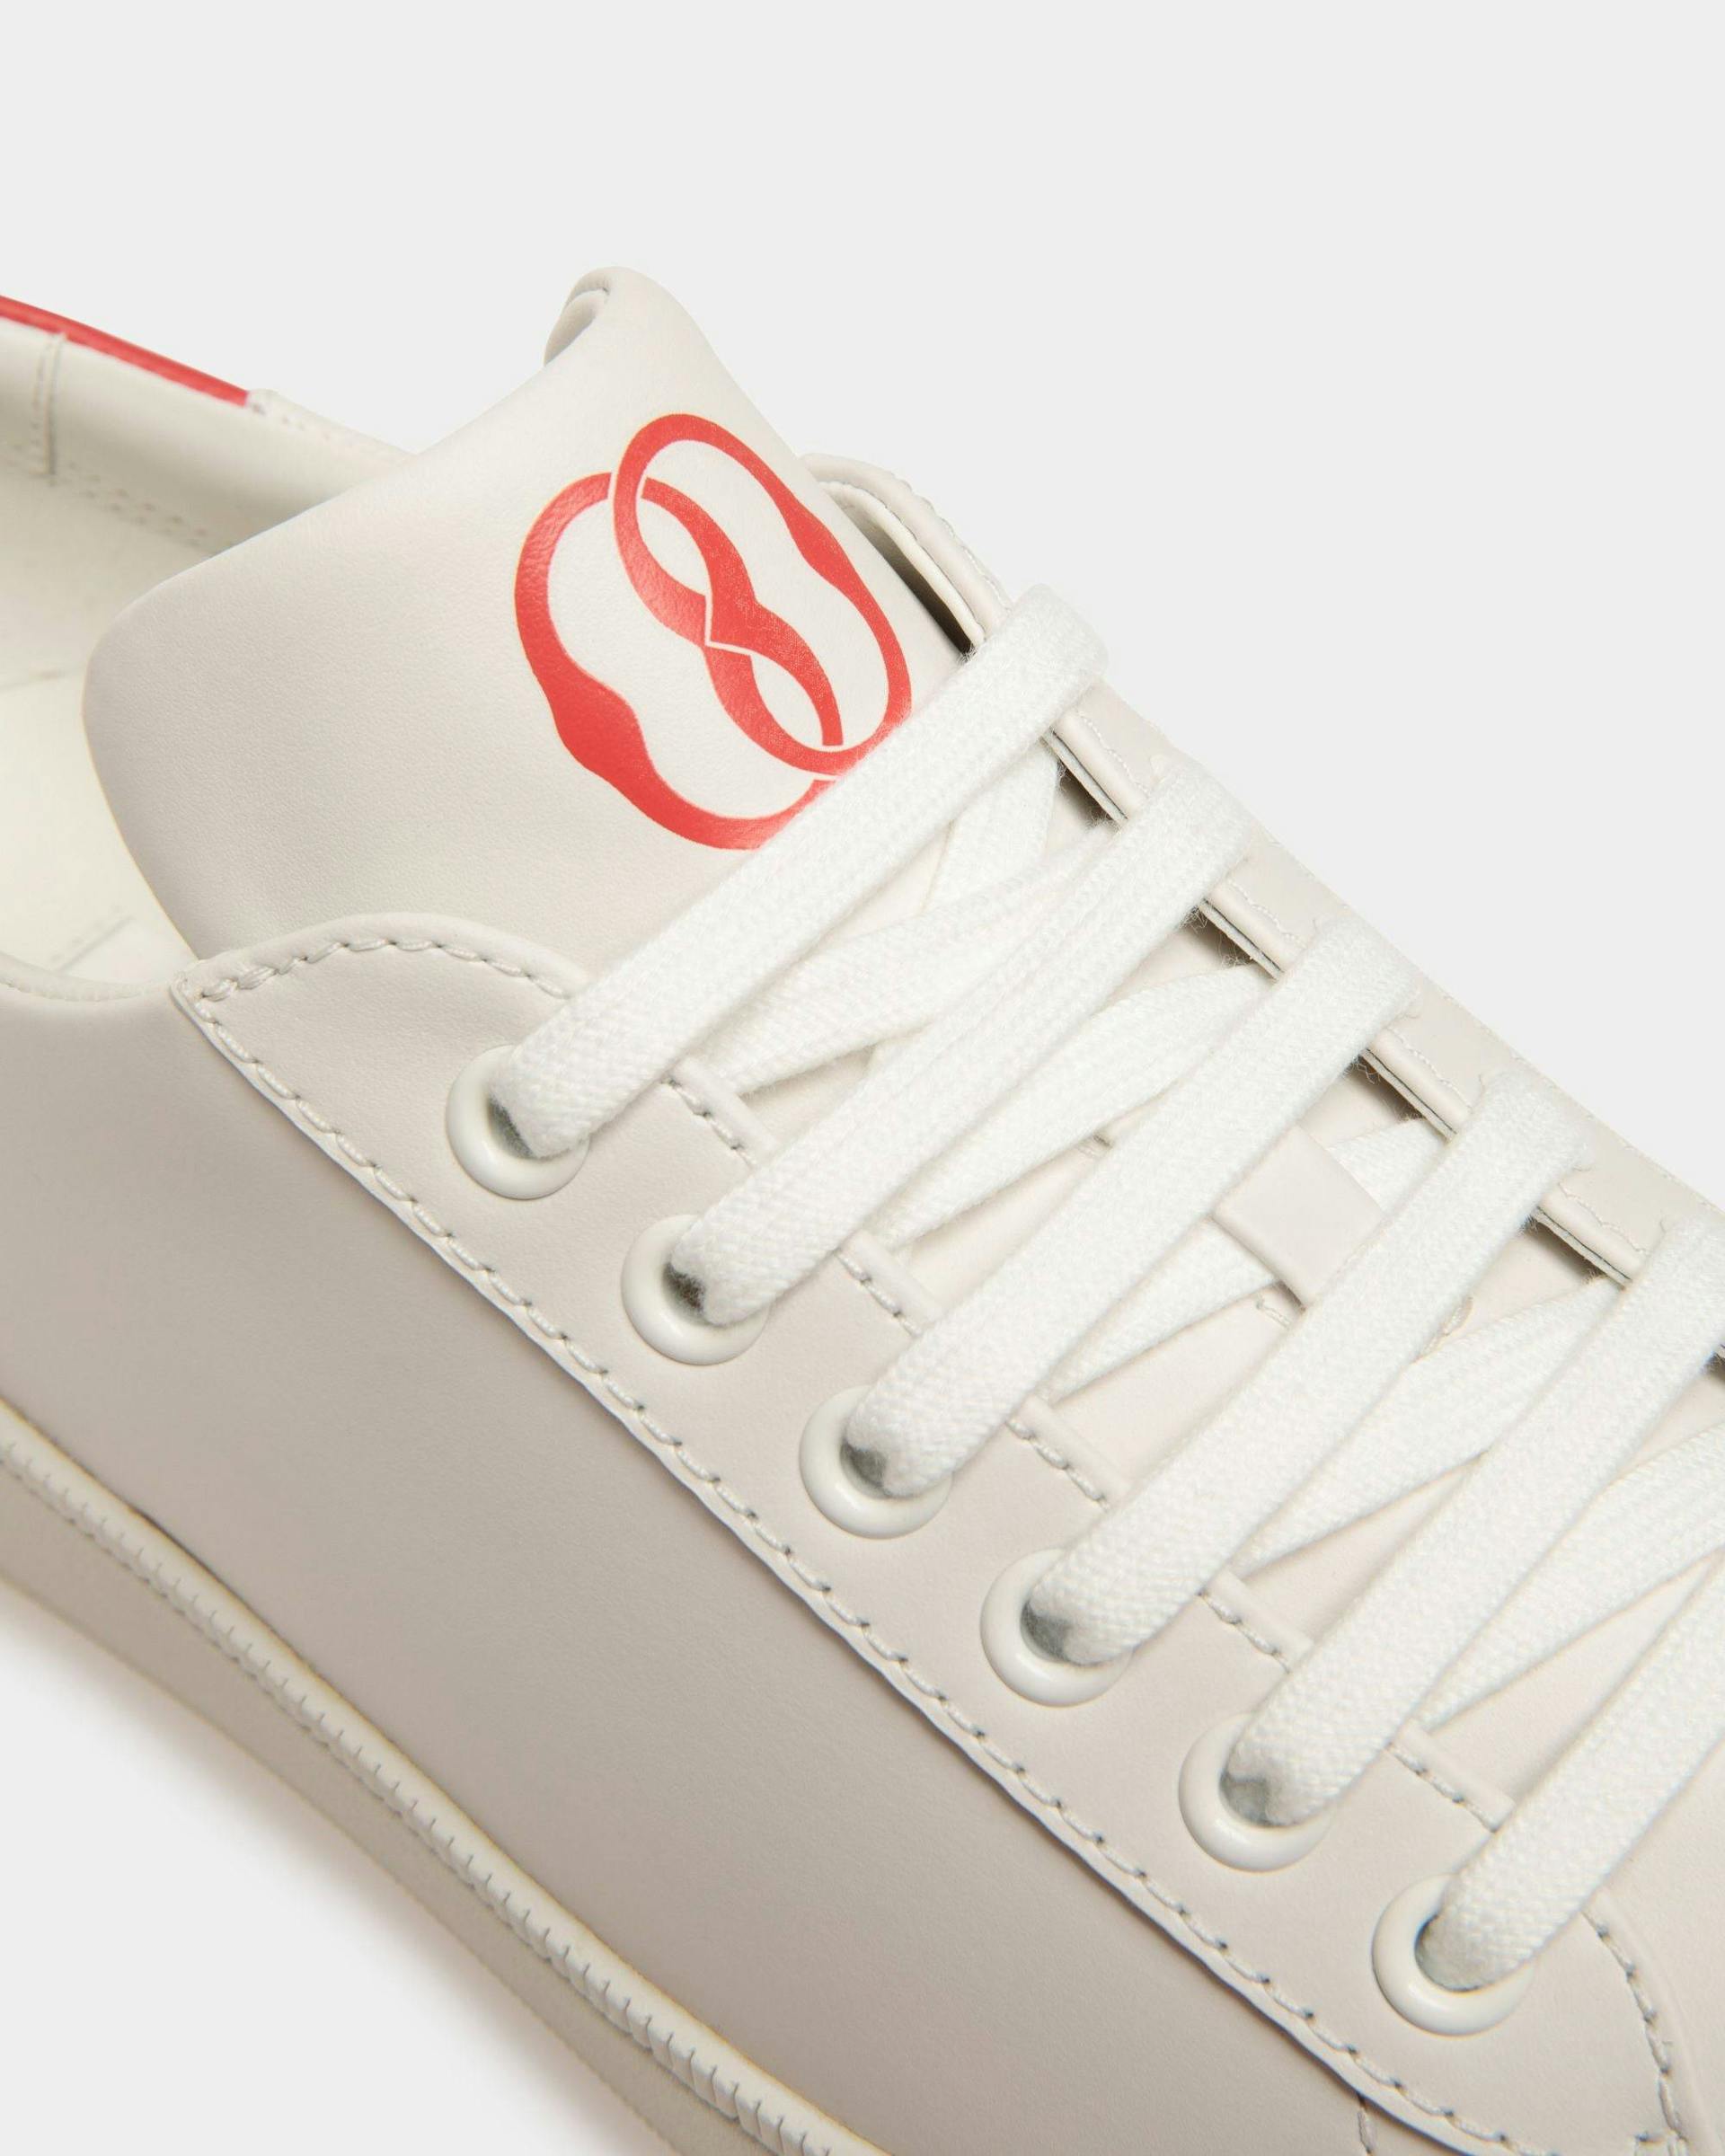 Women's Raise Sneaker in White Leather | Bally | Still Life Detail